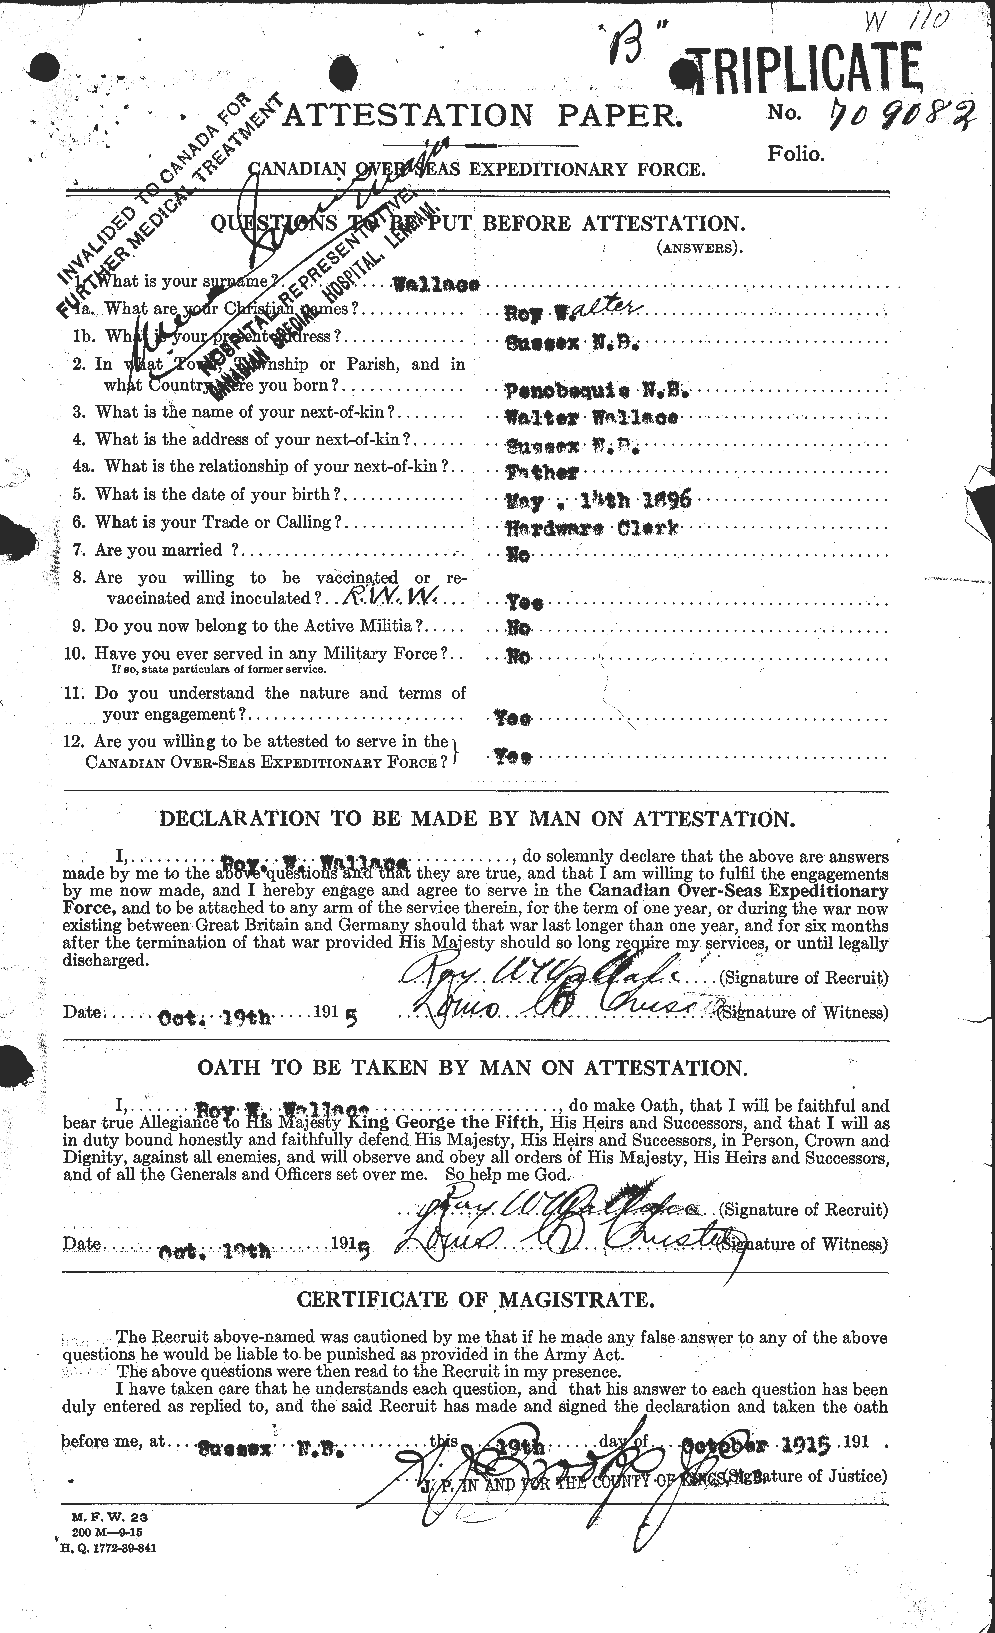 Dossiers du Personnel de la Première Guerre mondiale - CEC 654741a